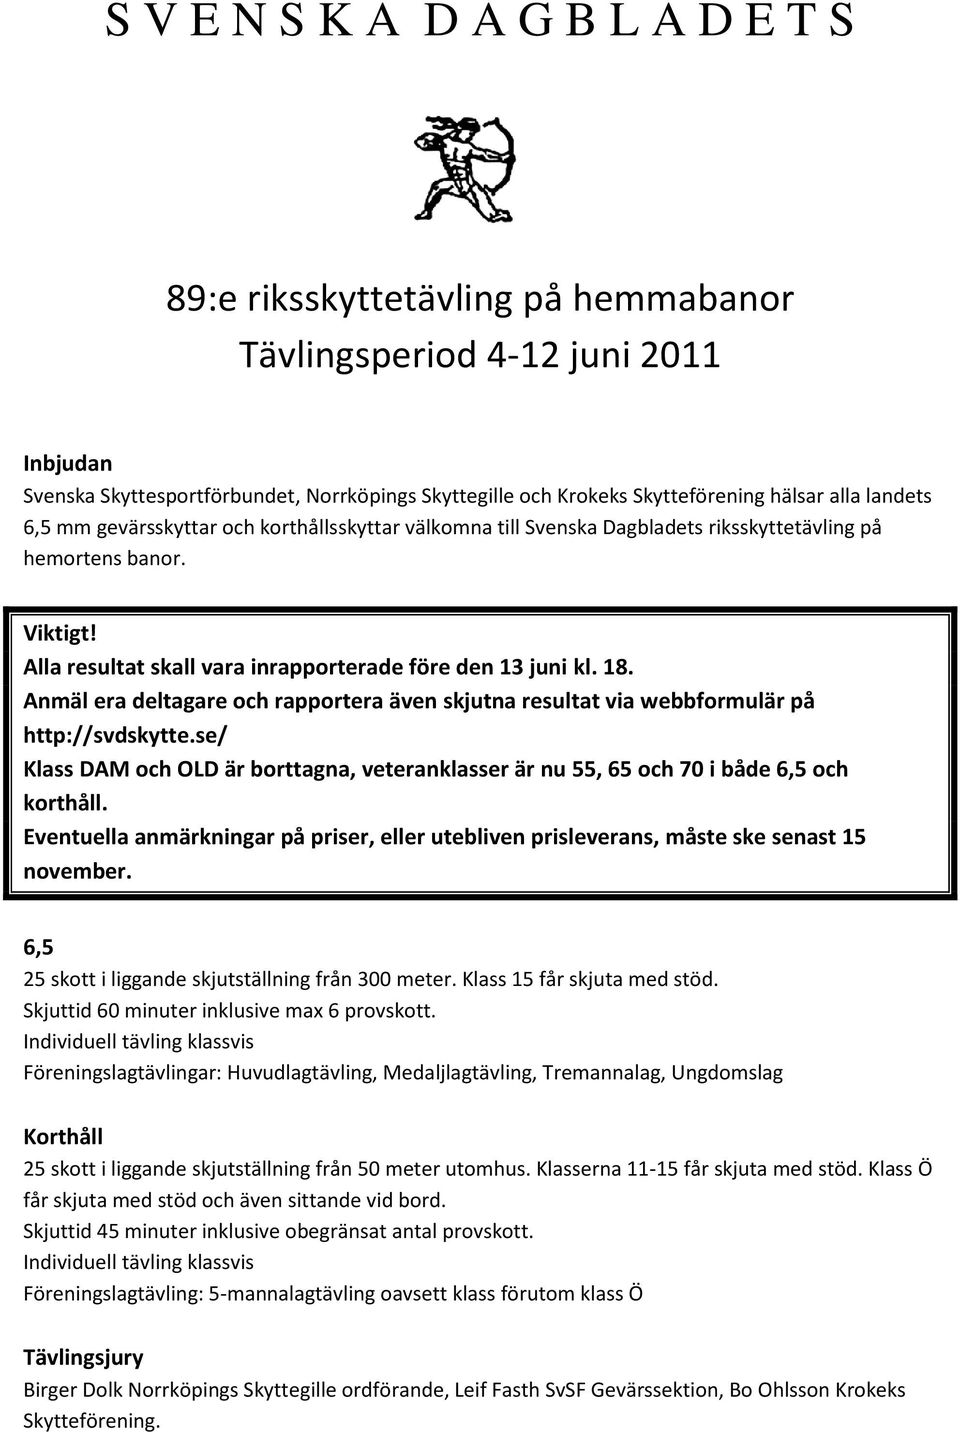 Anmäl era deltagare och rapportera även skjutna resultat via webbformulär på http://svdskytte.se/ Klass DAM och OLD är borttagna, veteranklasser är nu 55, 65 och 70 i både 6,5 och korthåll.